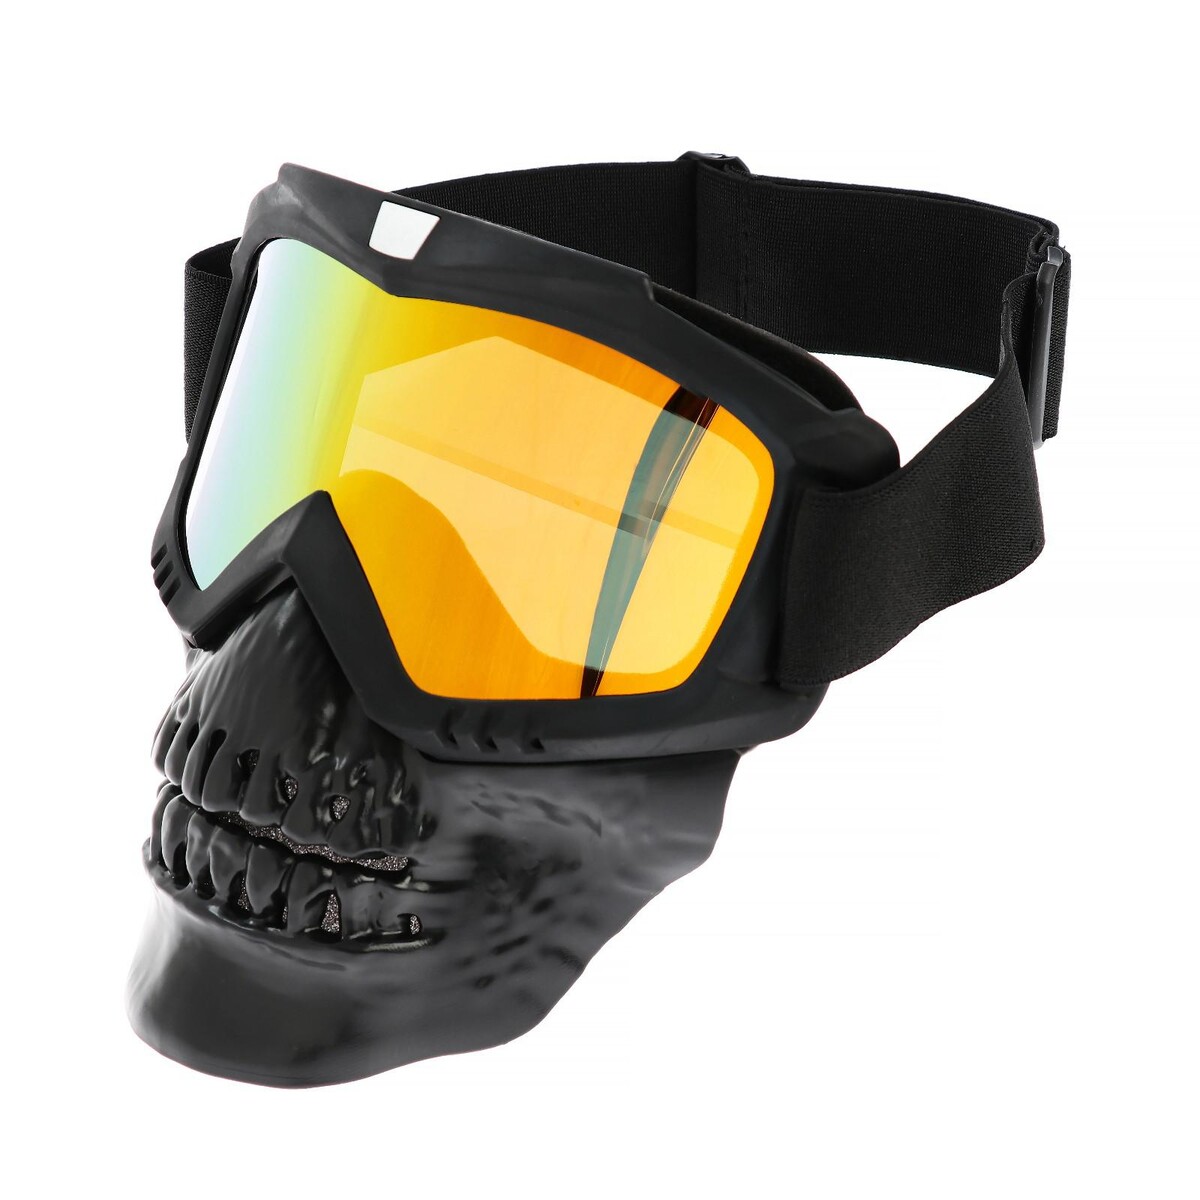 Очки-маска для езды на мототехнике, разборные, визор оранжевый, цвет черный очки маска для езды на мототехнике разборные визор желтый